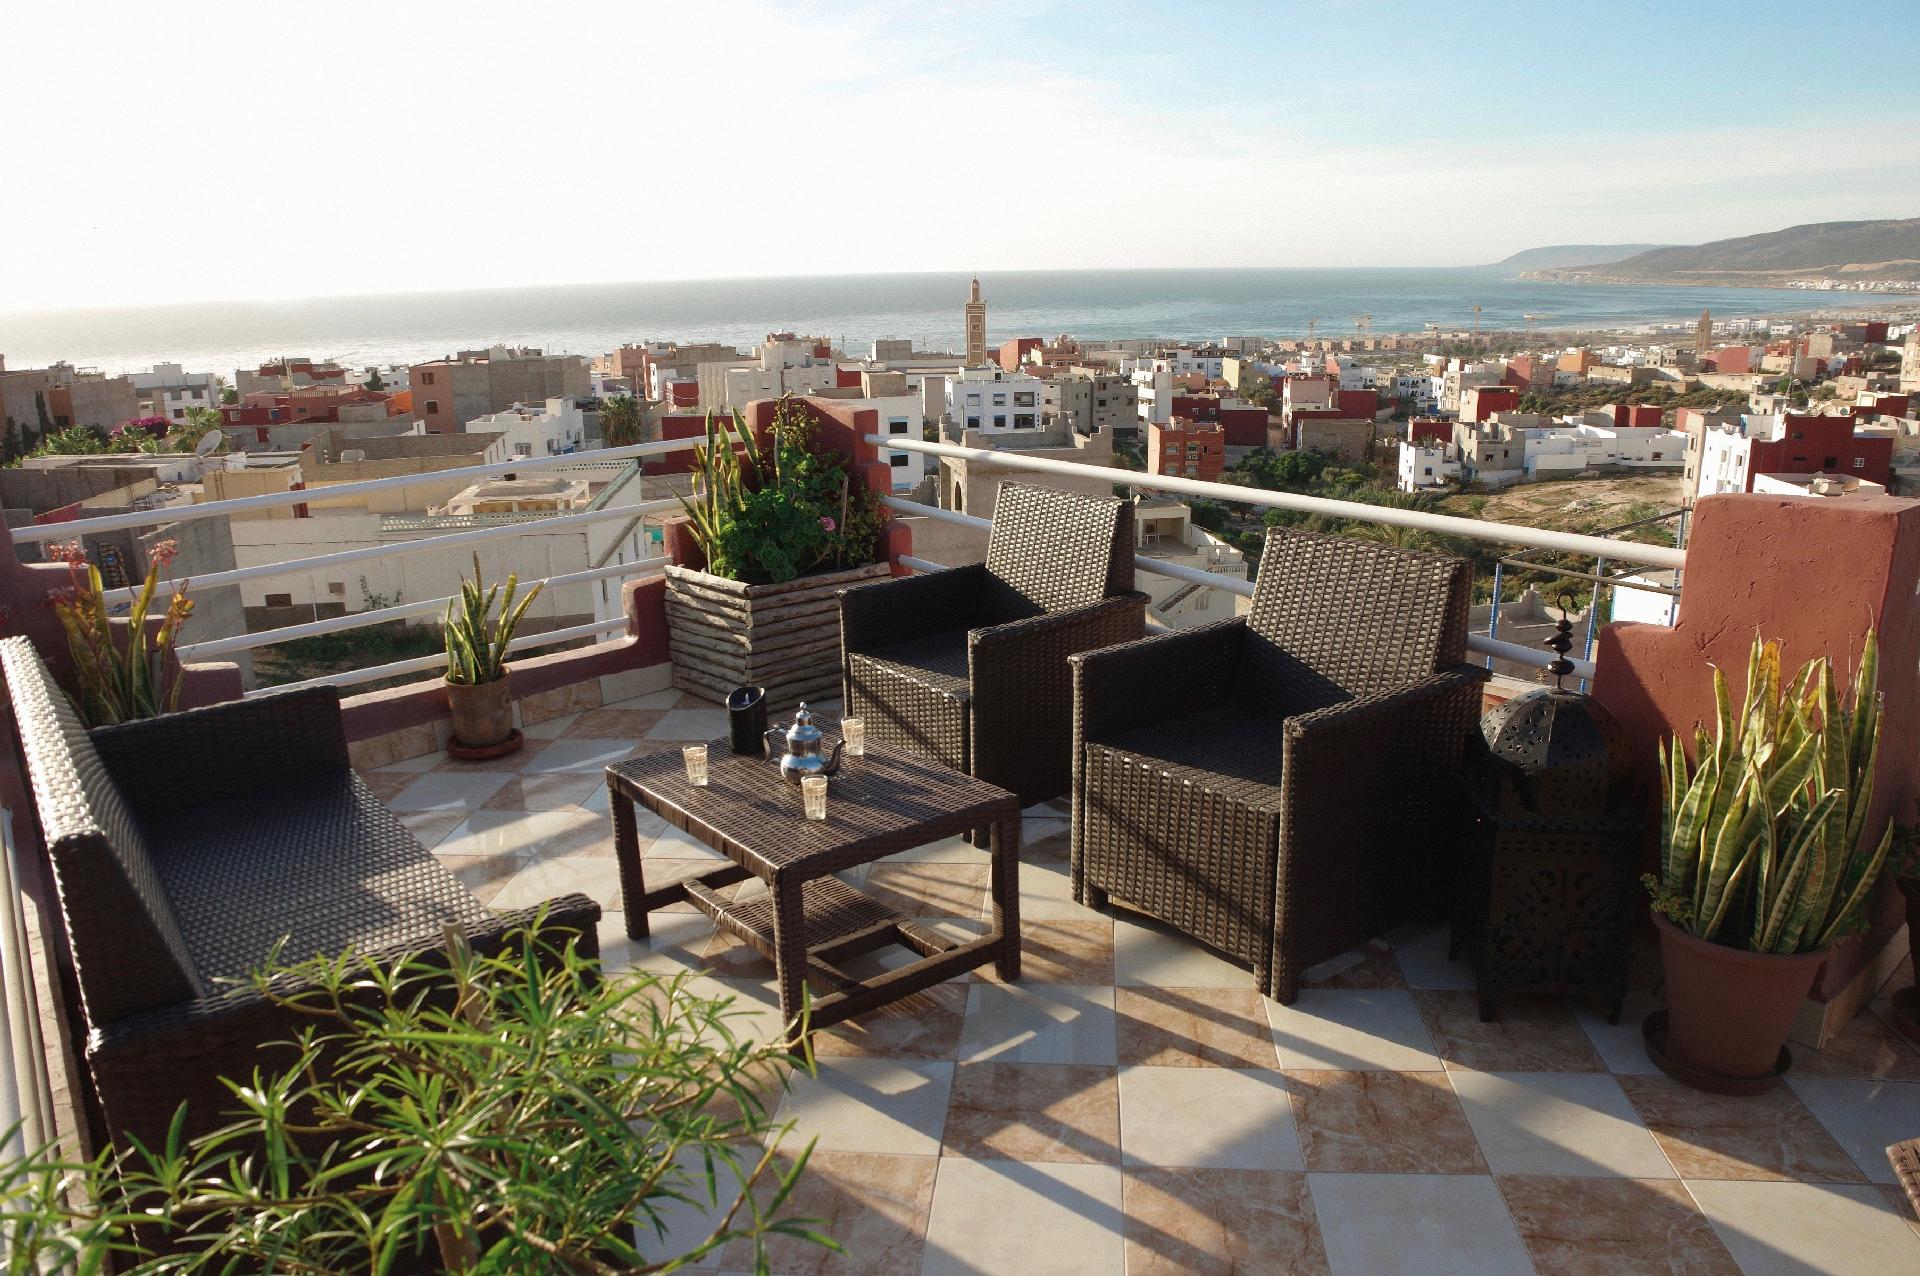 Ferienwohnung mit Terrasse, Sonnenterrasse und Mee Ferienwohnung in Marokko